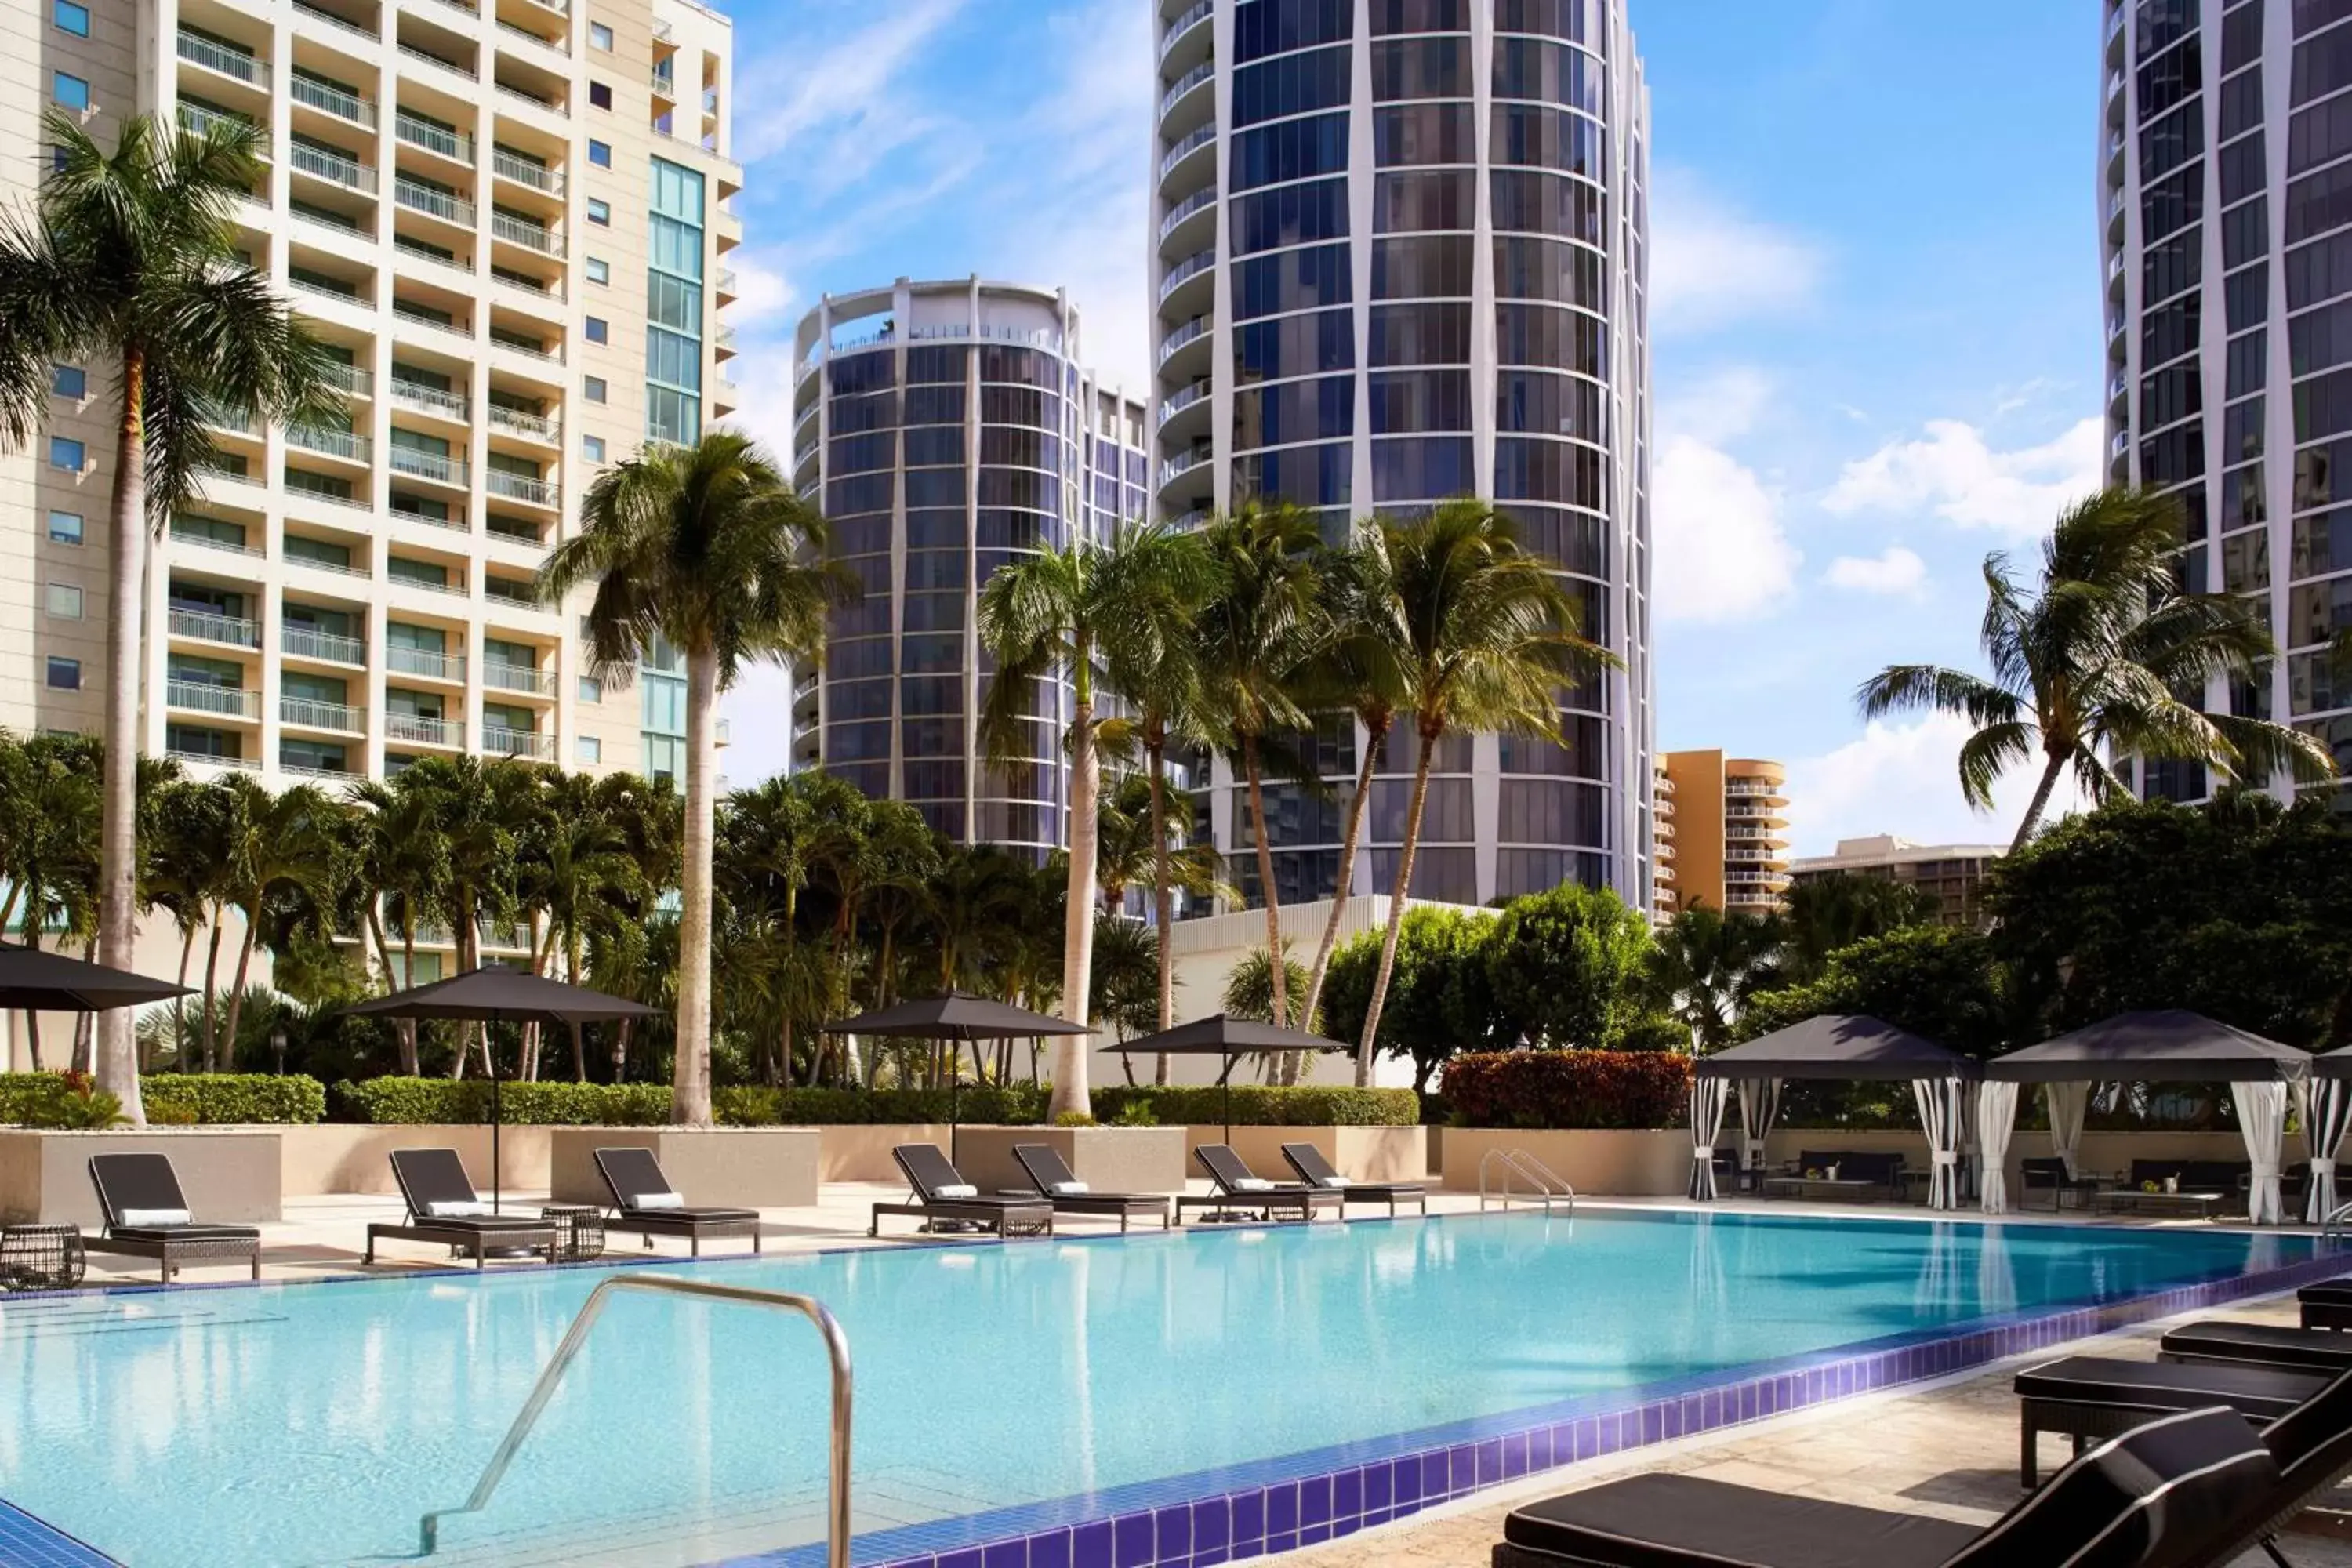 Swimming Pool in The Ritz-Carlton Coconut Grove, Miami